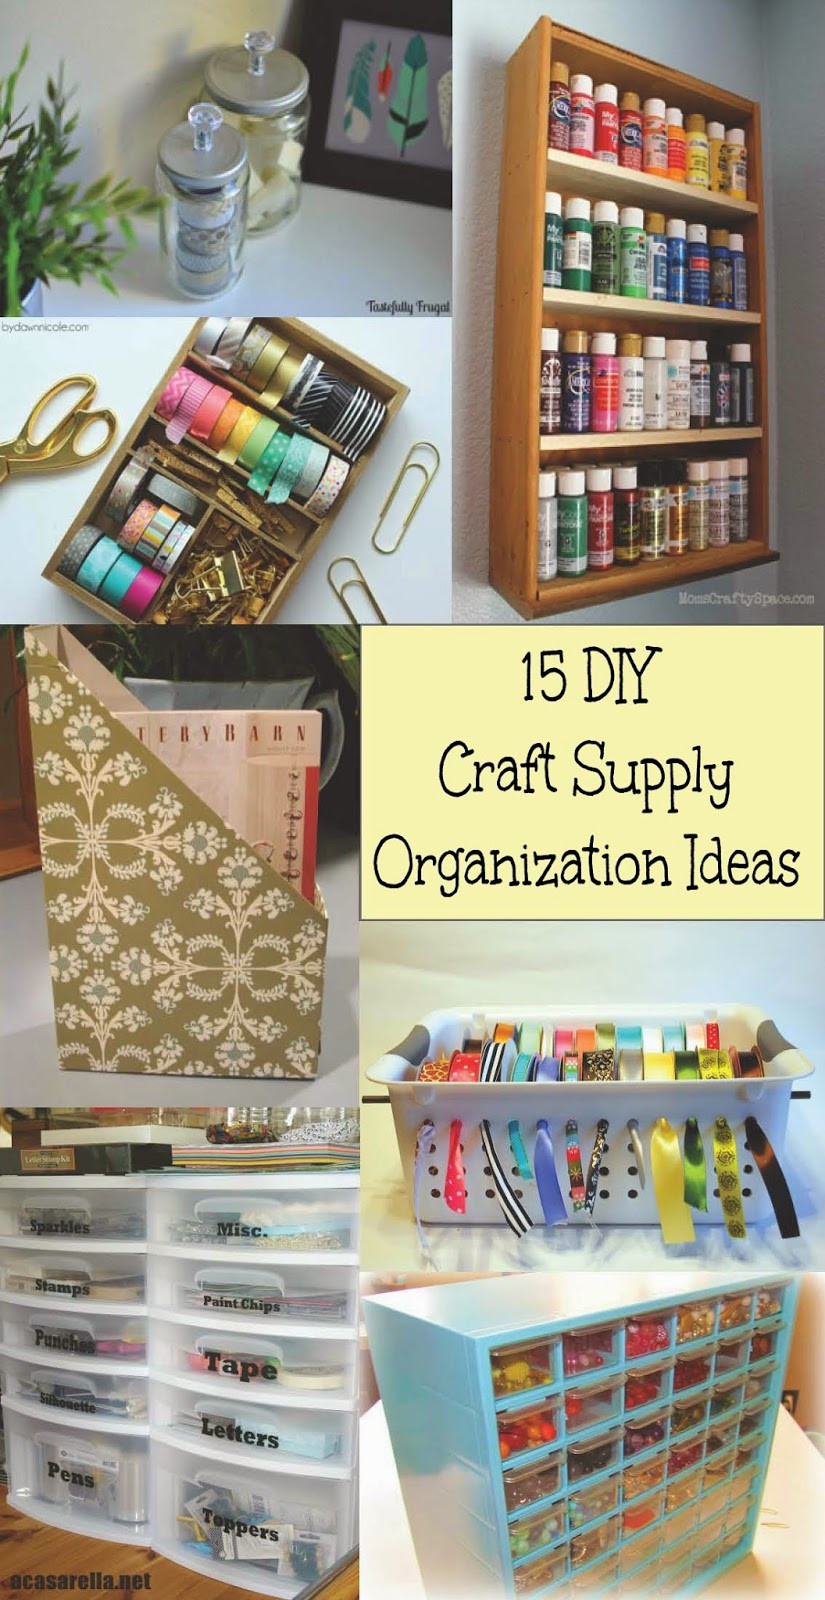 DIY Organization Crafts
 15 DIY Craft Supply Organization Ideas Home Crafts by Ali